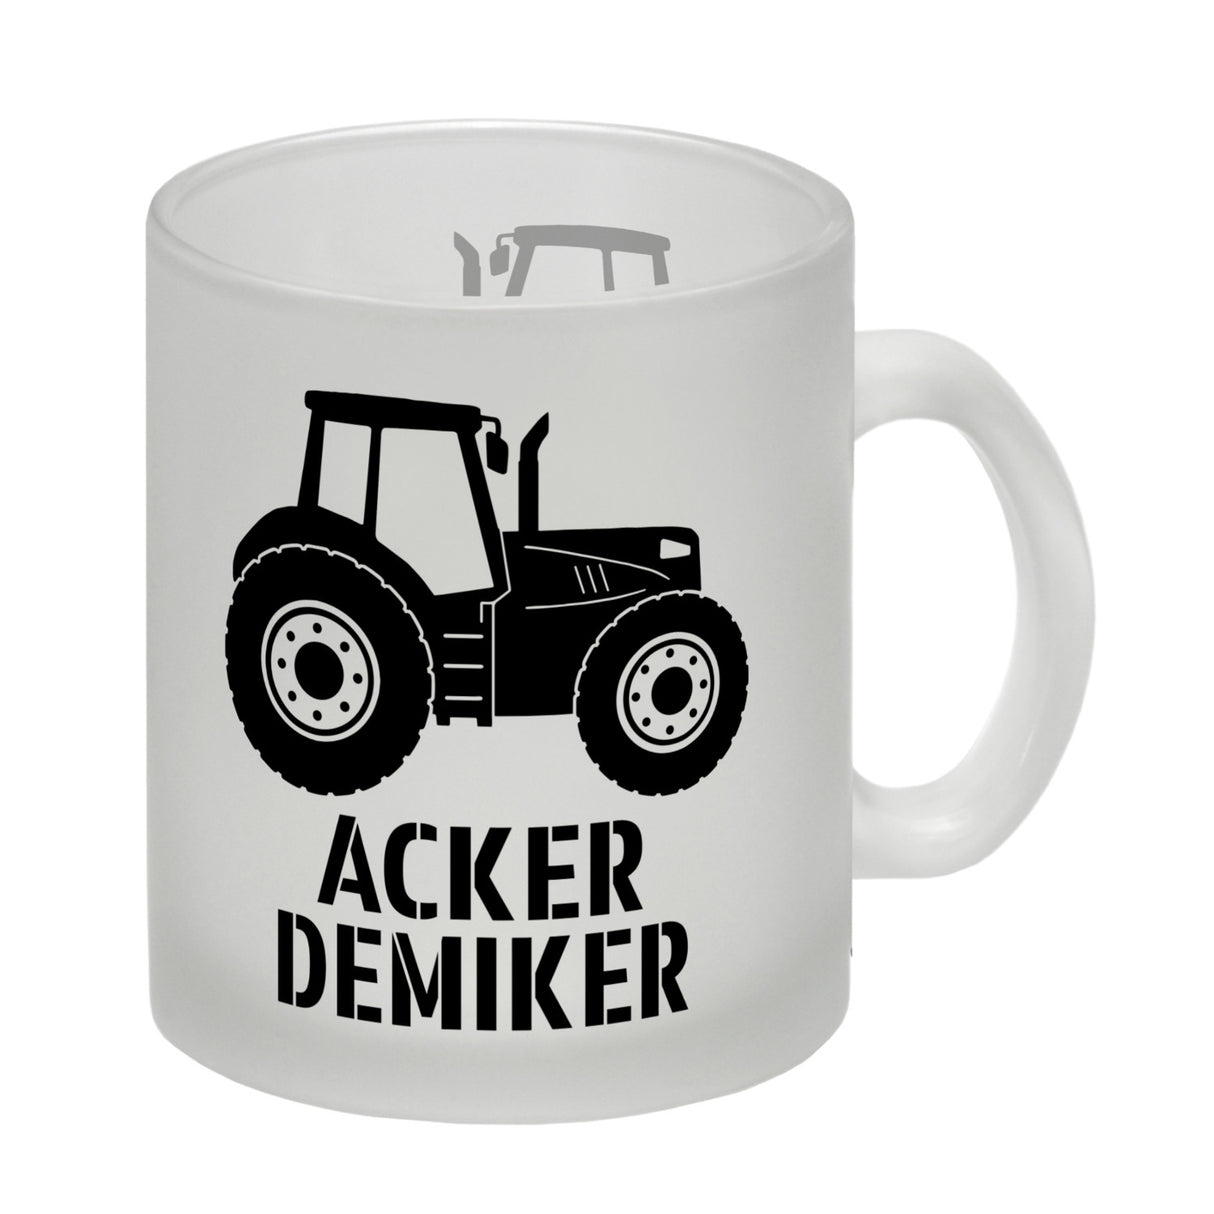 Traktor Kaffeebecher mit Spruch Ackerdemiker